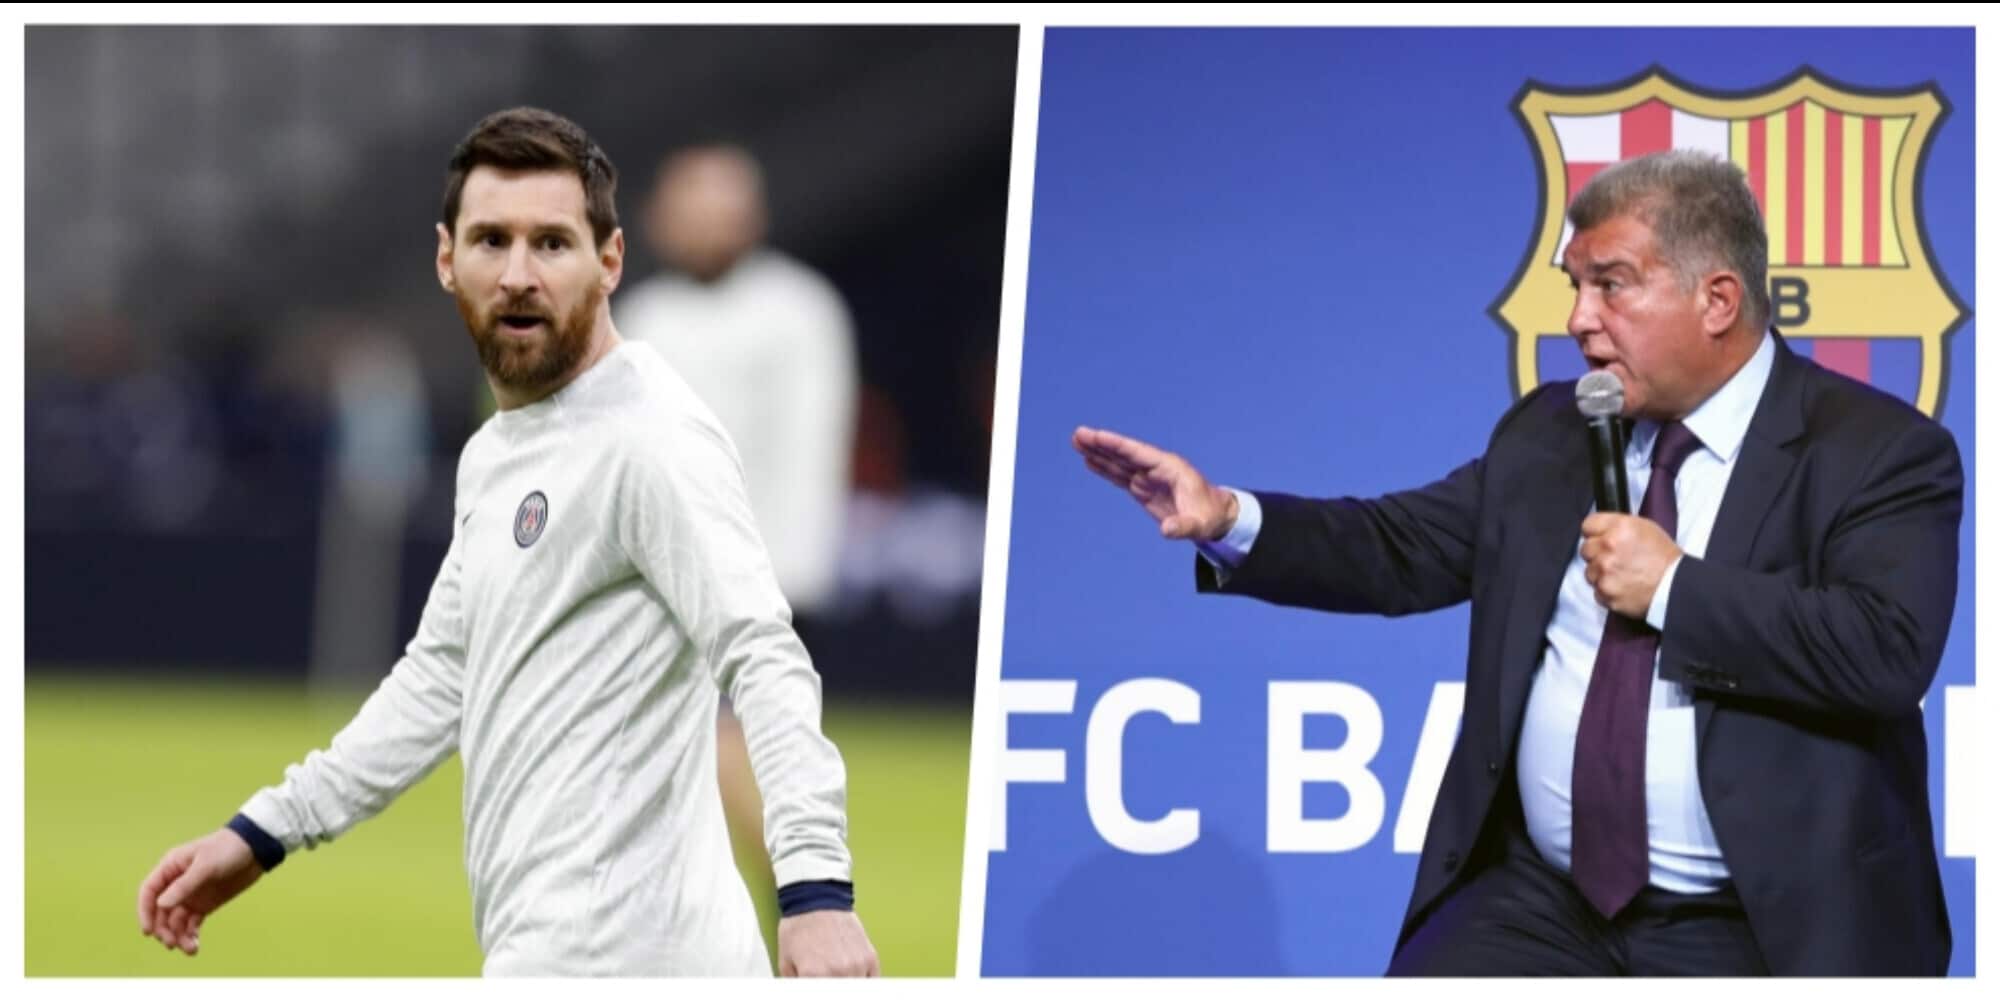 CdS – Barcellona, Laporta “chiama” Messi: “Questa è casa tua”